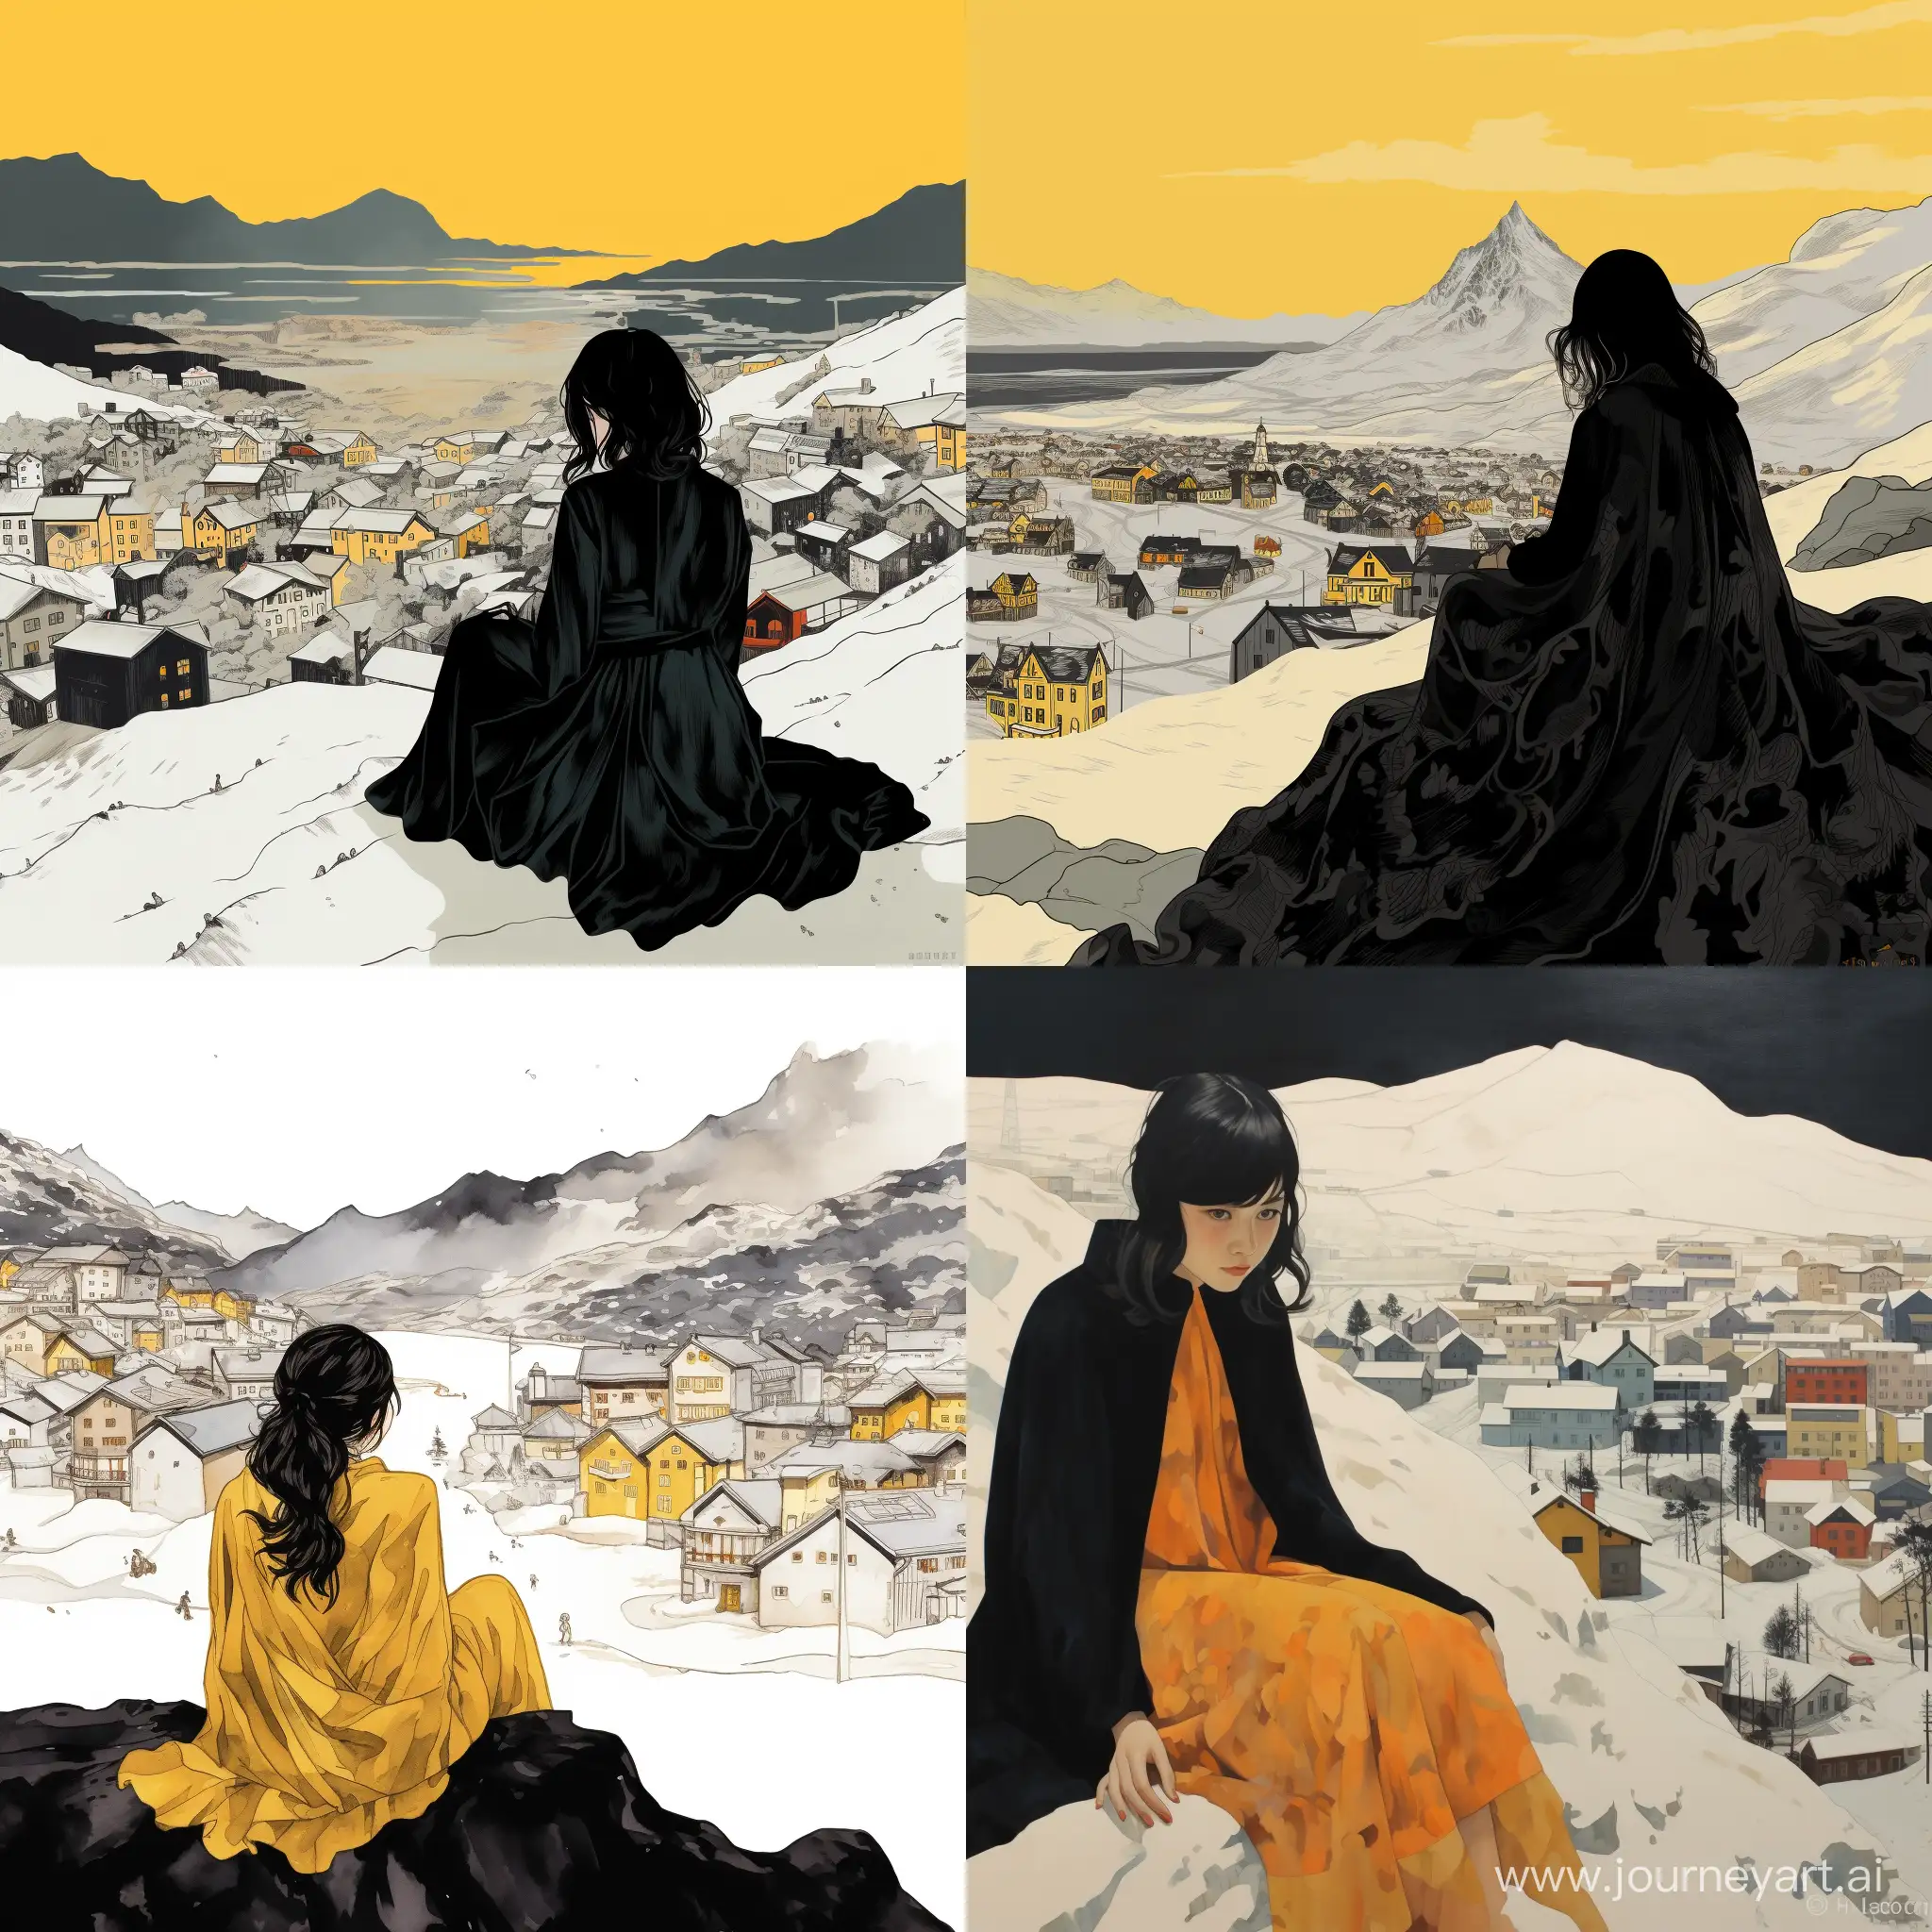 /mode Девушка сидит на склоне заснеженной горы, у нее темные волосы и на ней надето платье желтого цвета, а поверх платья черная накидка, она смотрит на заснеженный и разрушенный город, покрытый льдом